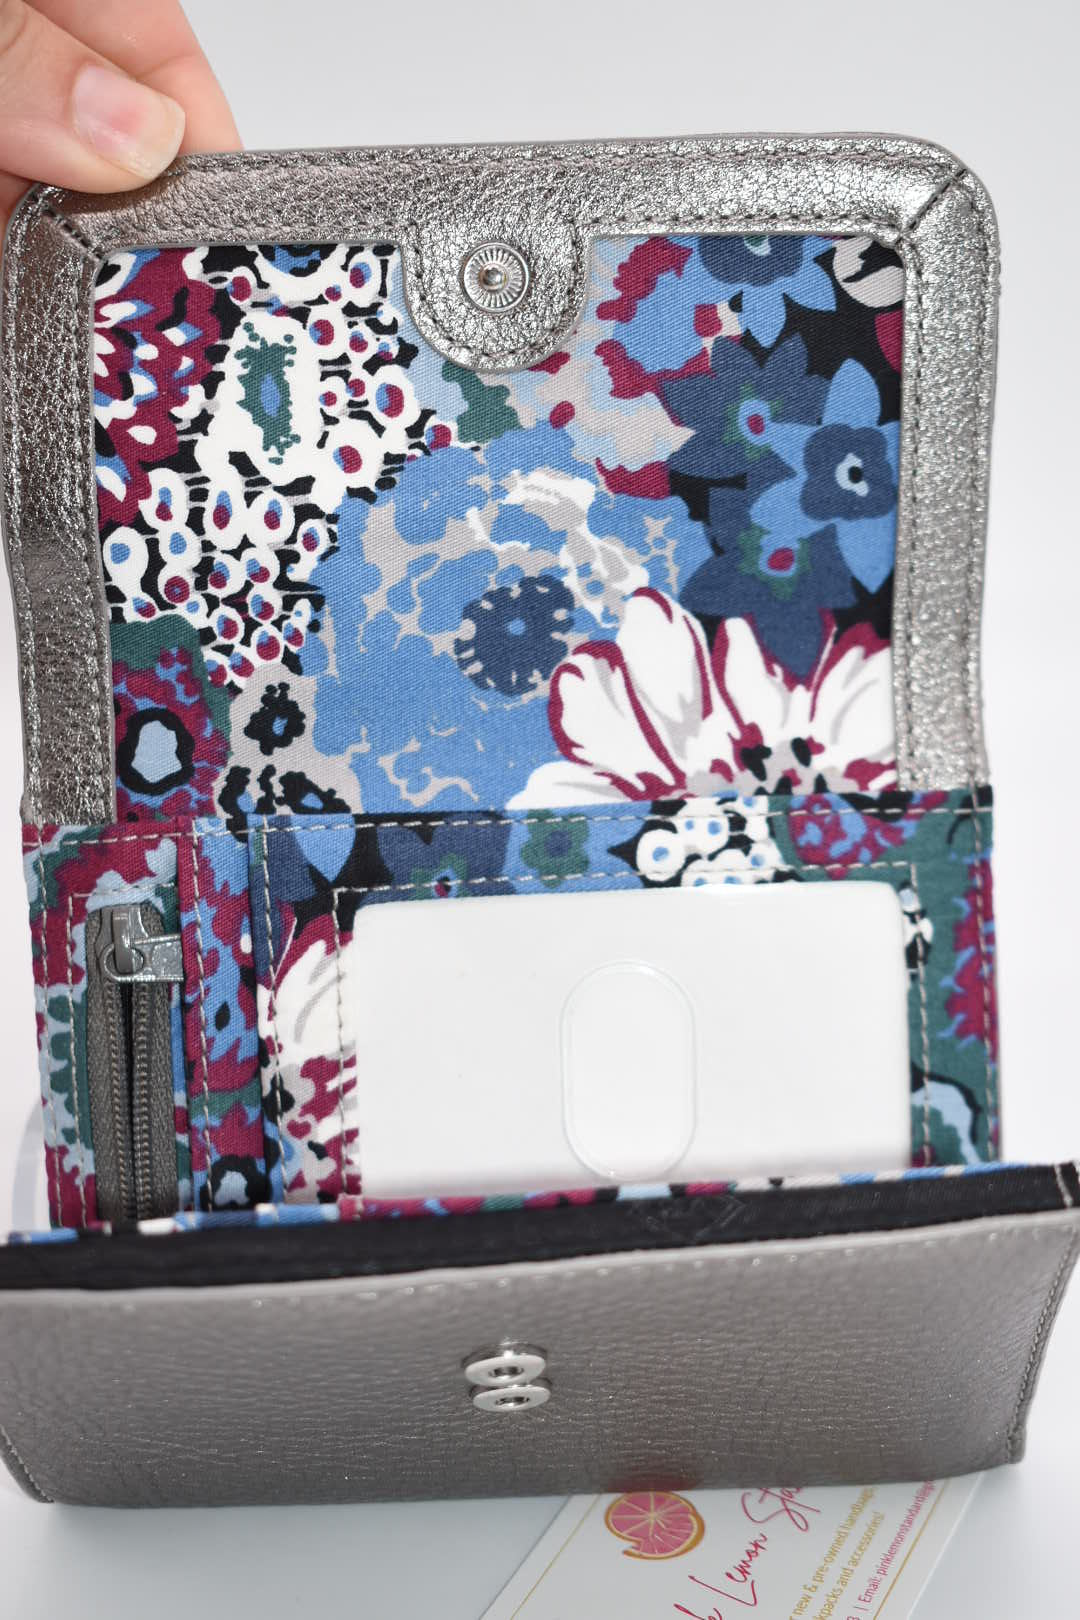 Vera Bradley Leather Riley Compact Wallet in "Caspian Sea" Pattern